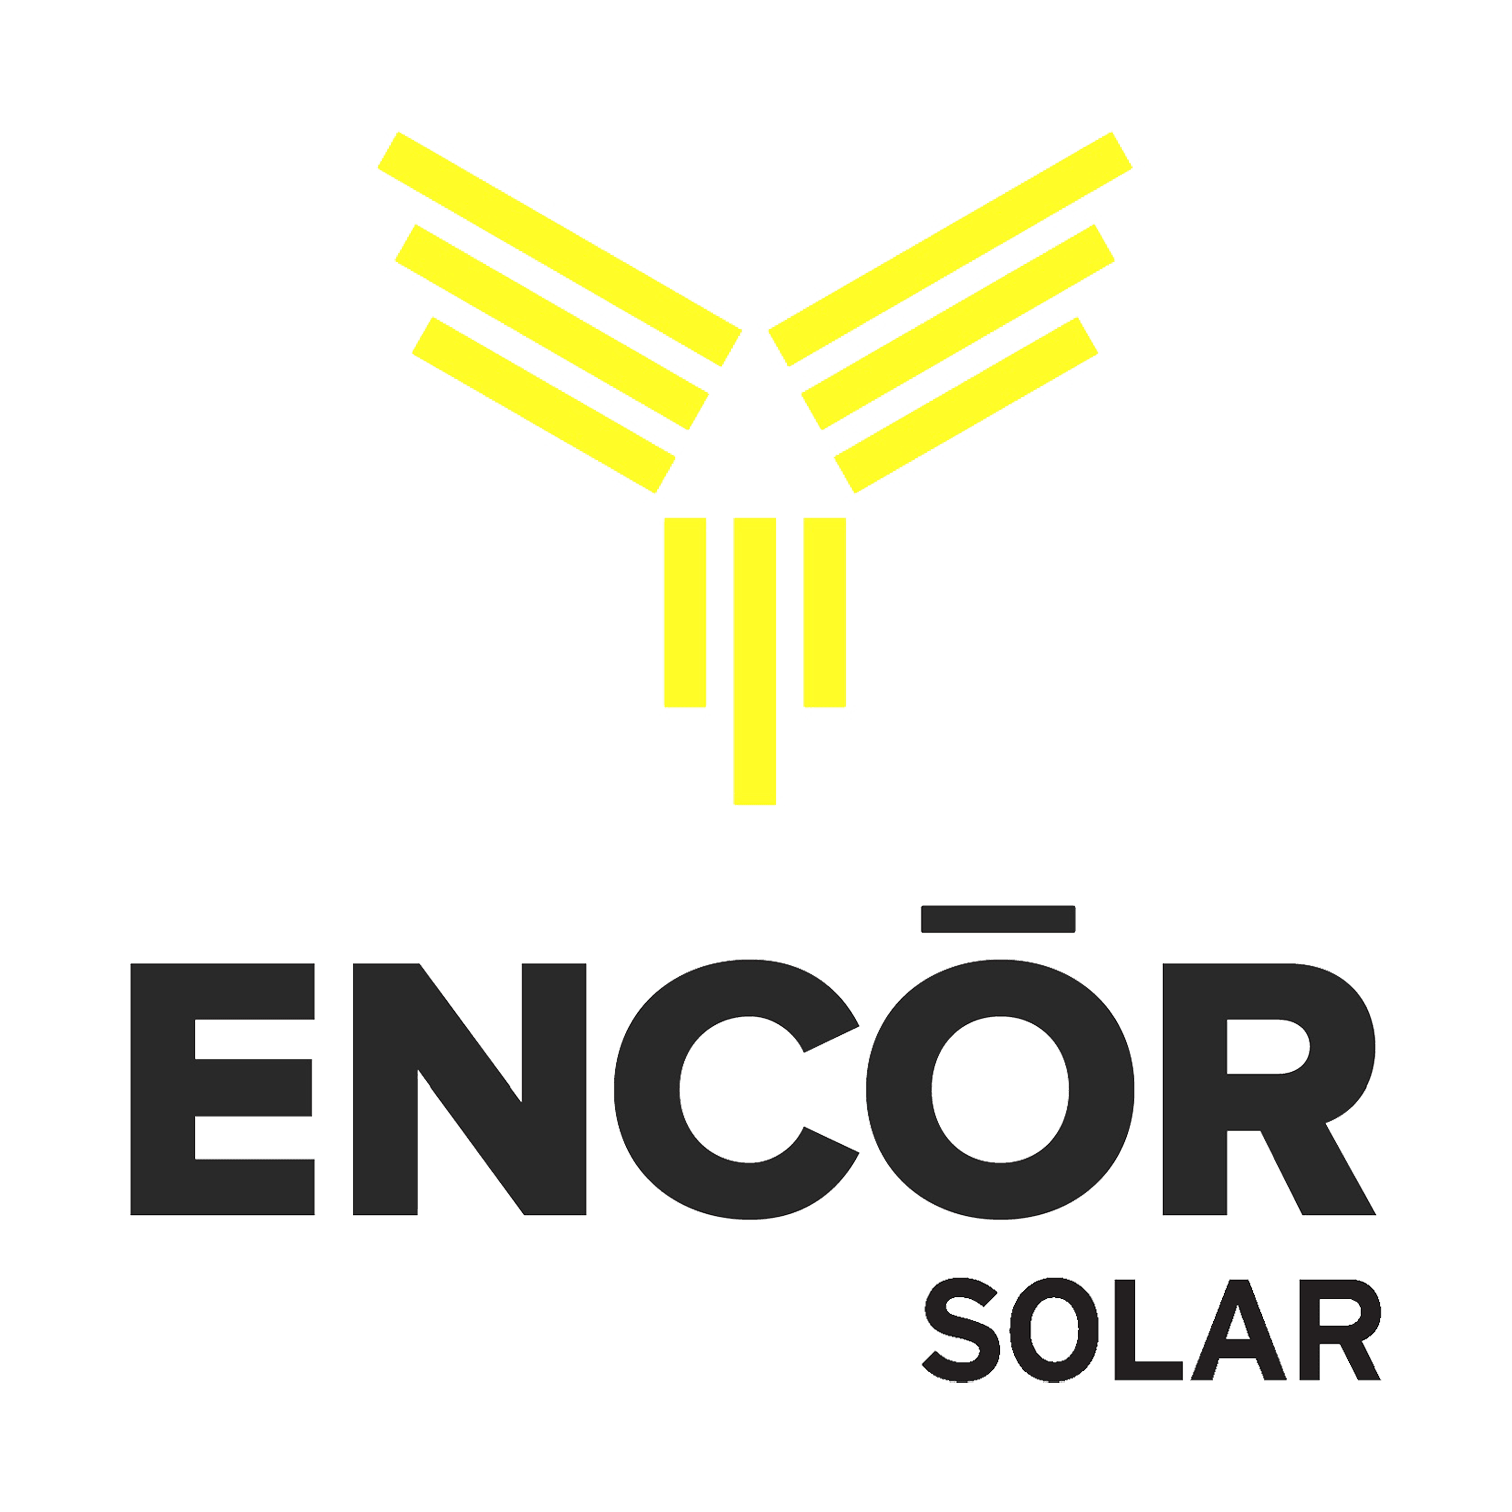 Je Encor Solar dobrou společností?